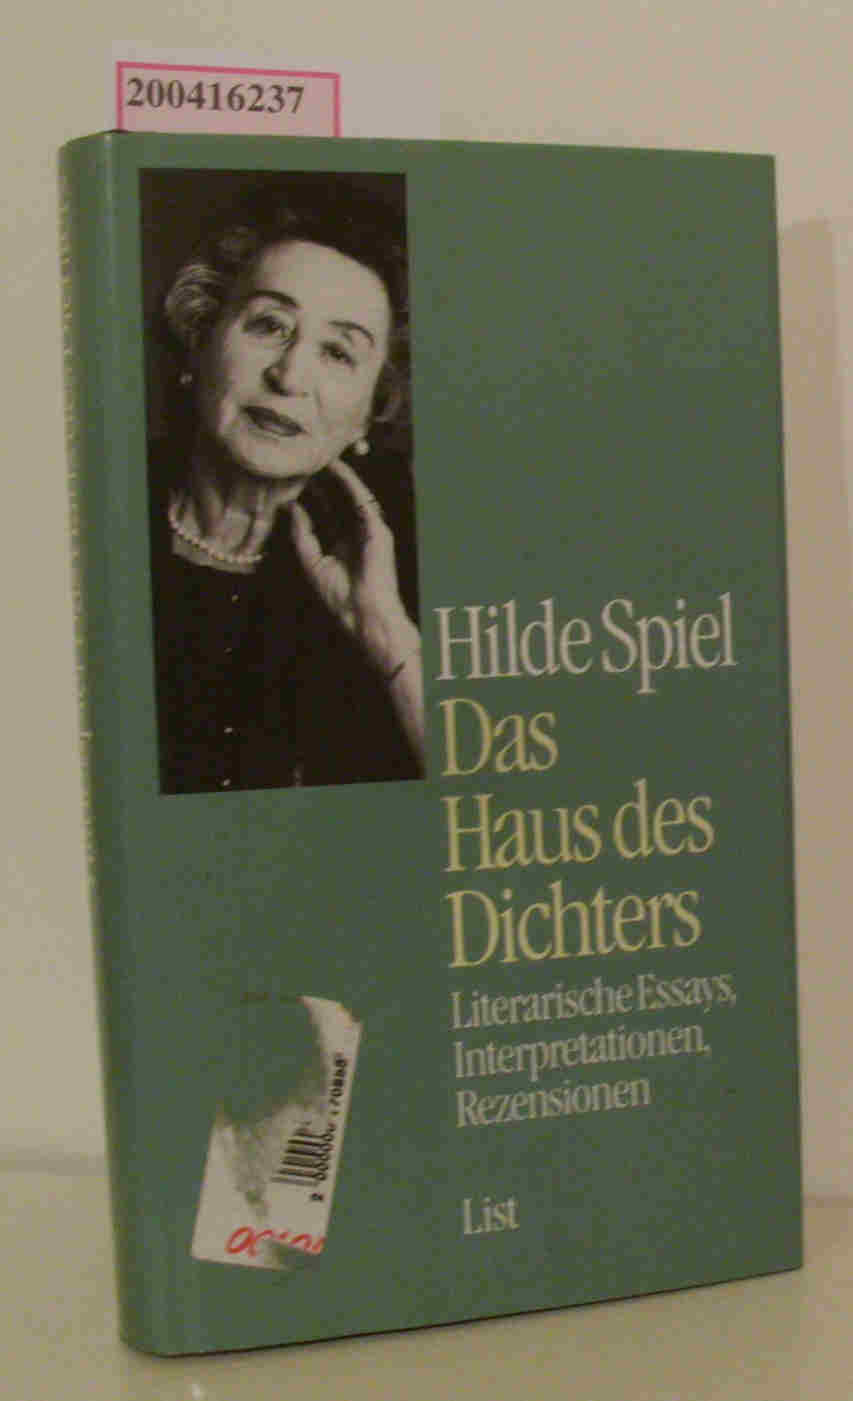 Das Haus des Dichters Literarische Essays, Interpretationenm Rezensionen - Spiel, Hilde